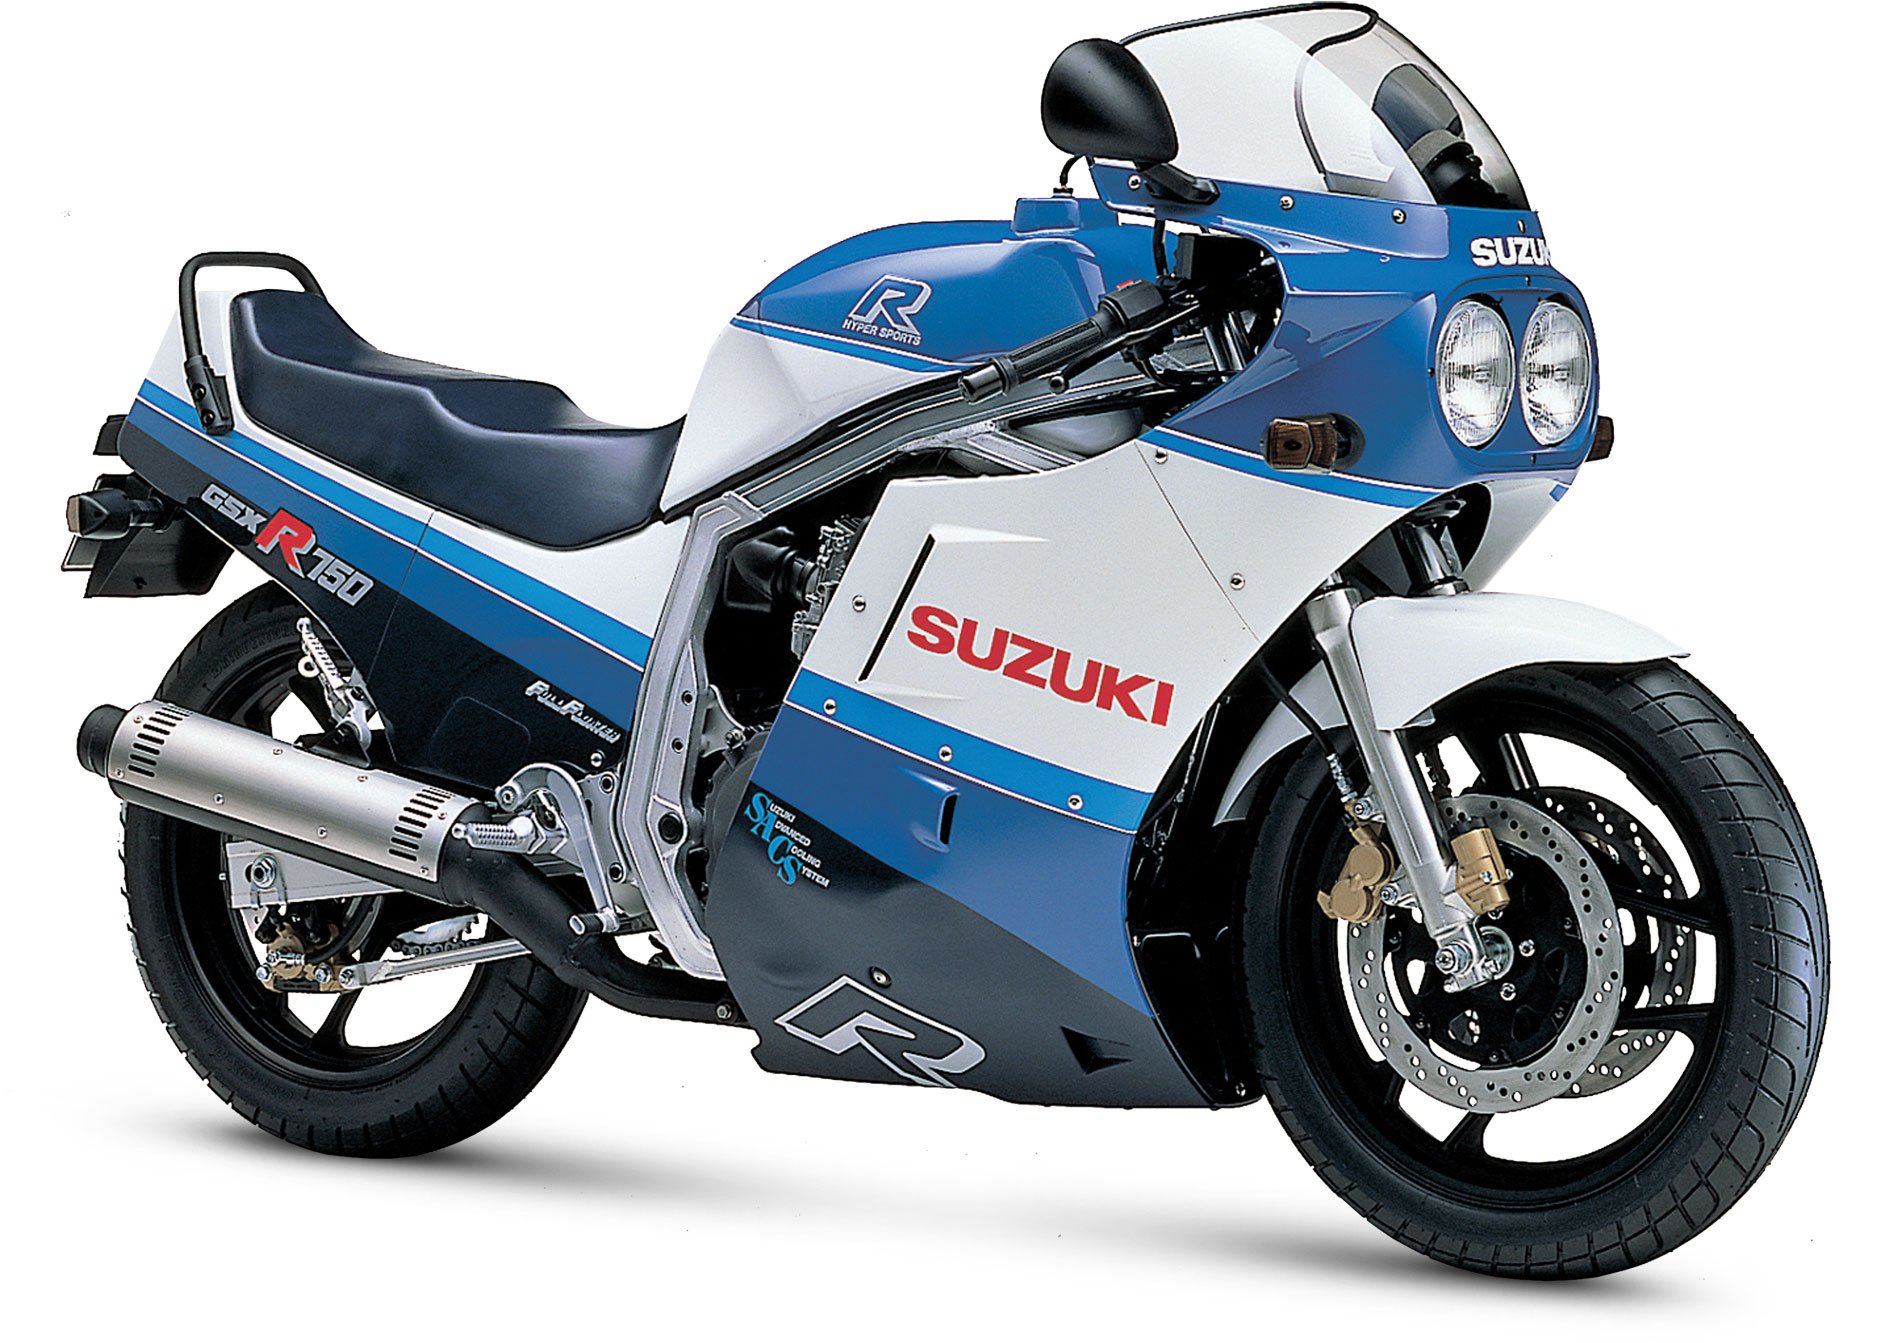 1987, Suzuki, Gsx r750, Motorcycles Wallpaper